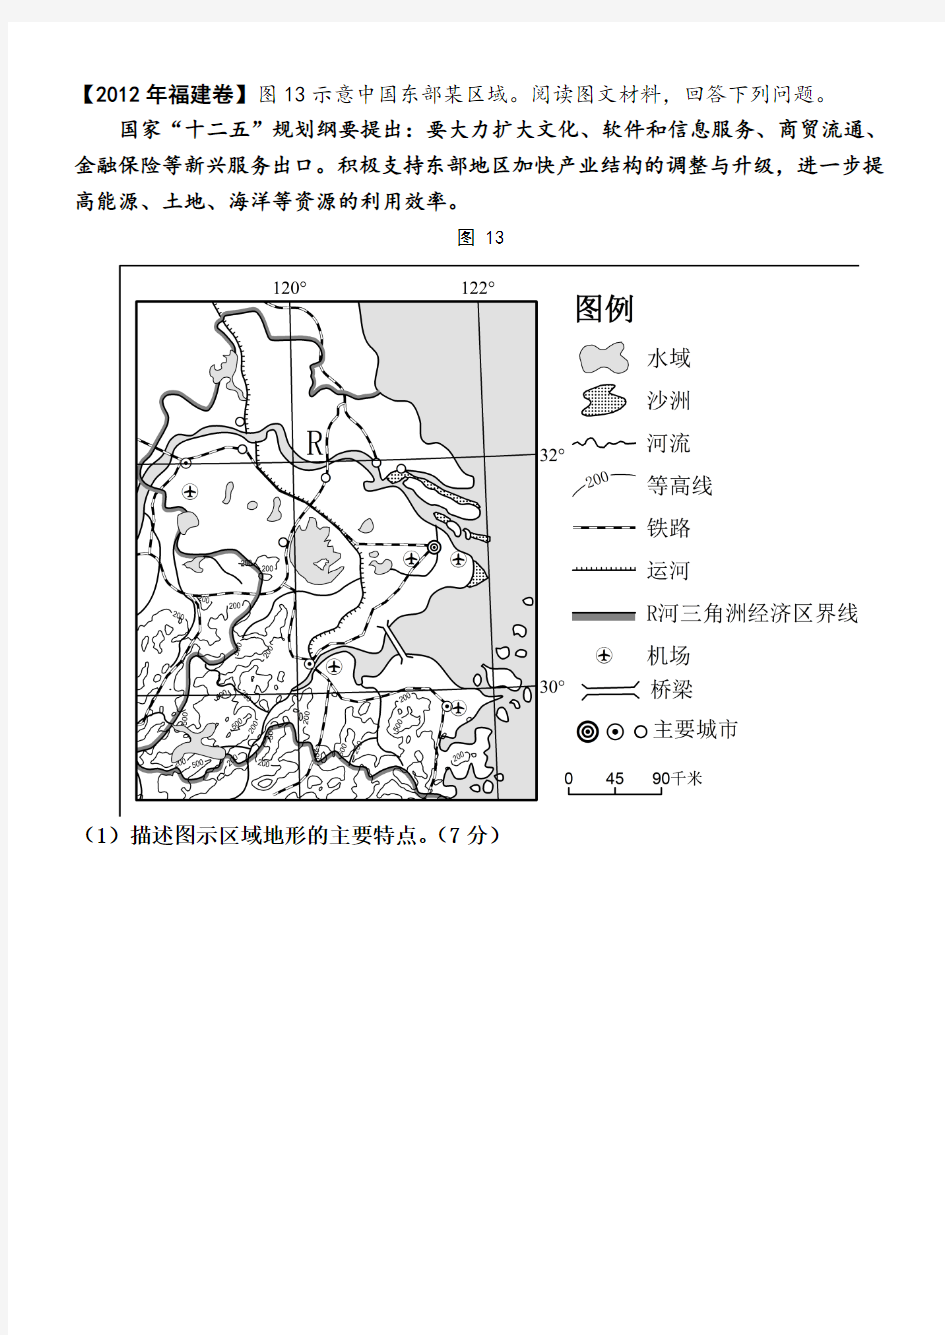 10、区域自然地理特征分析